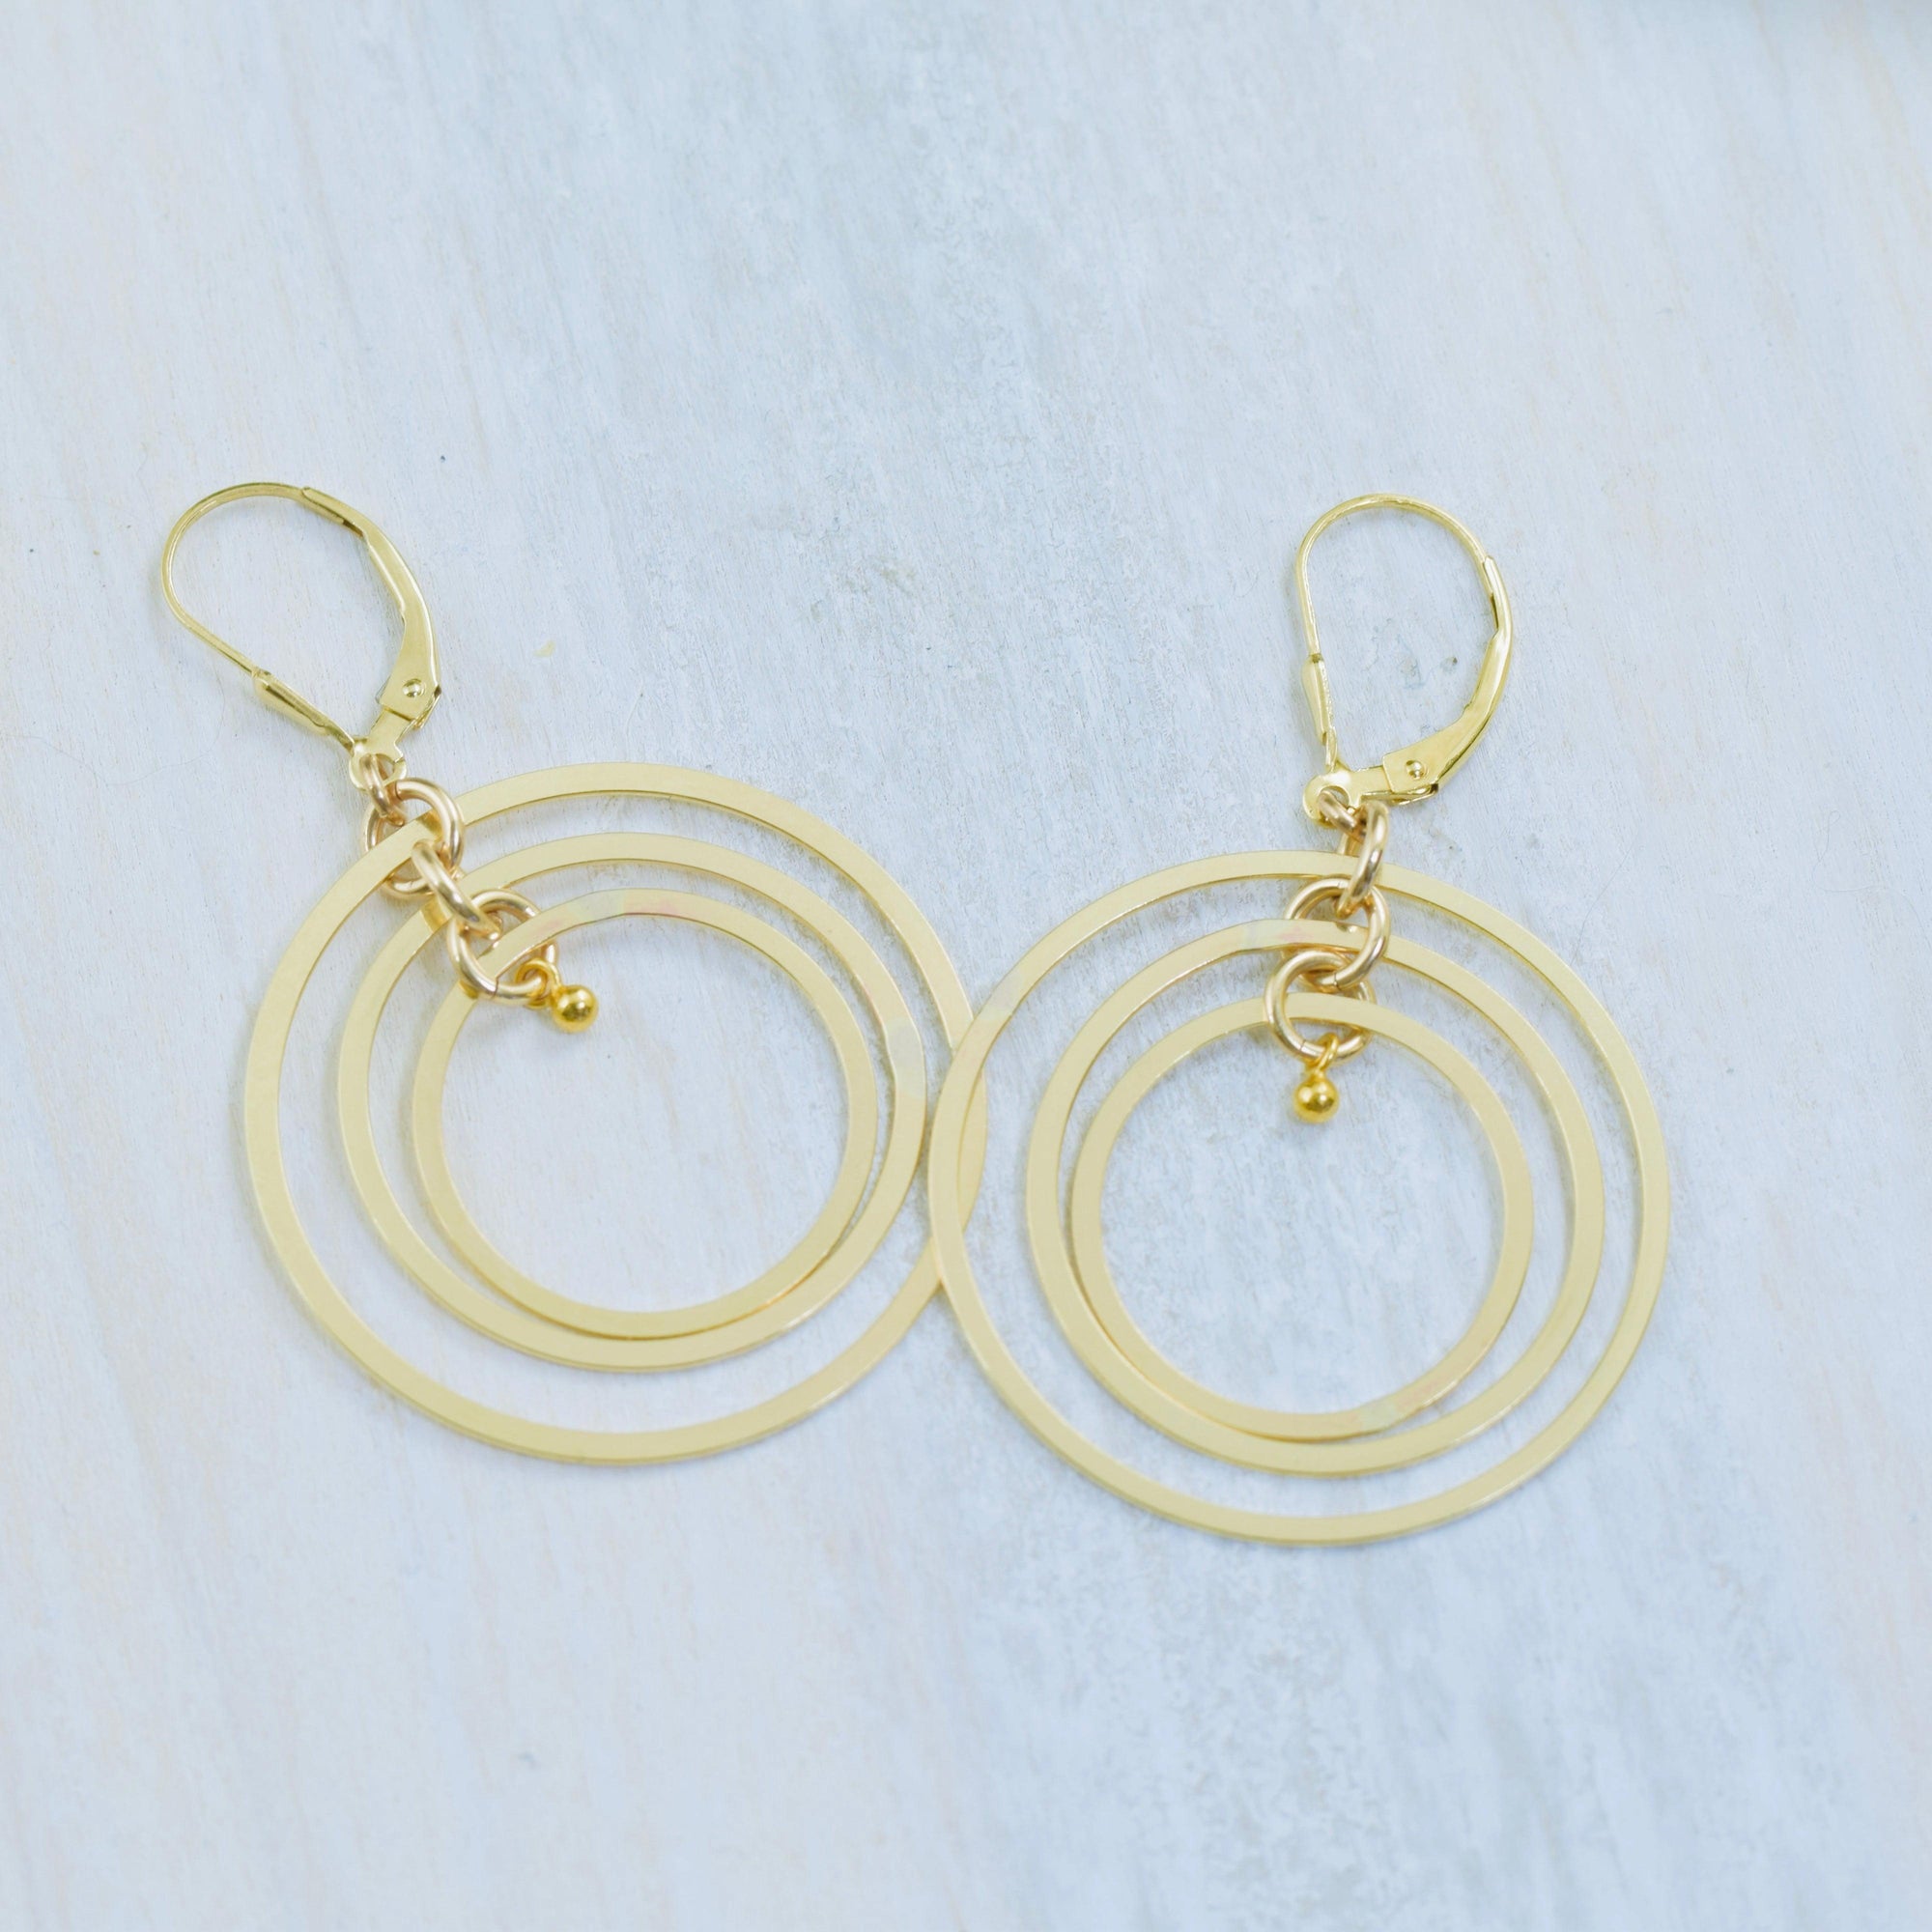 Large gold filled triple hoop earrings